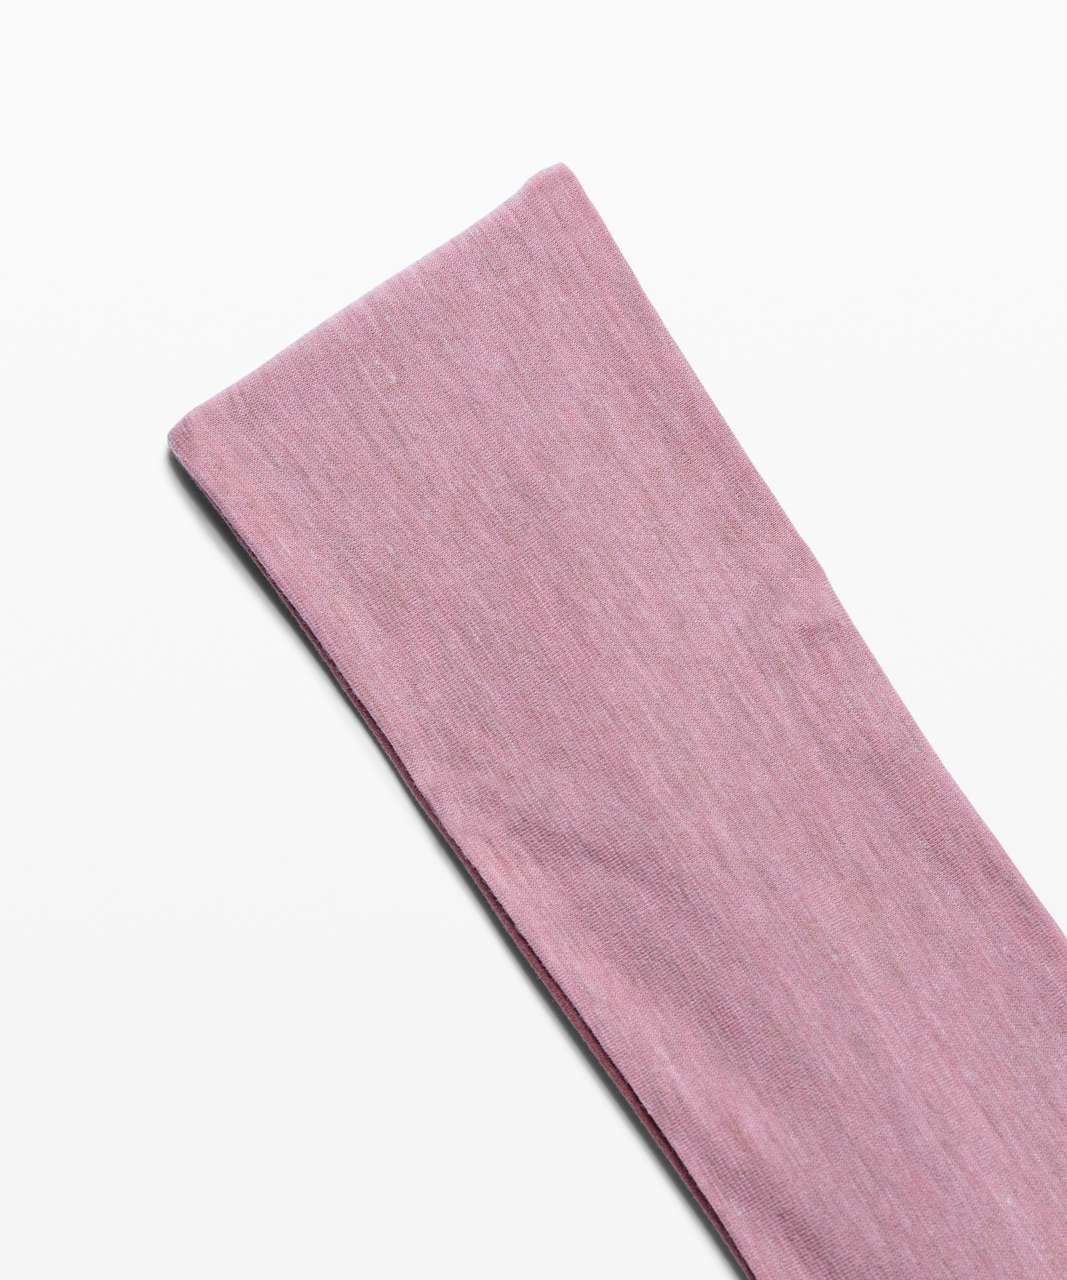 Lululemon Fringe Fighter Headband - Pink Pastel / Ancient Copper